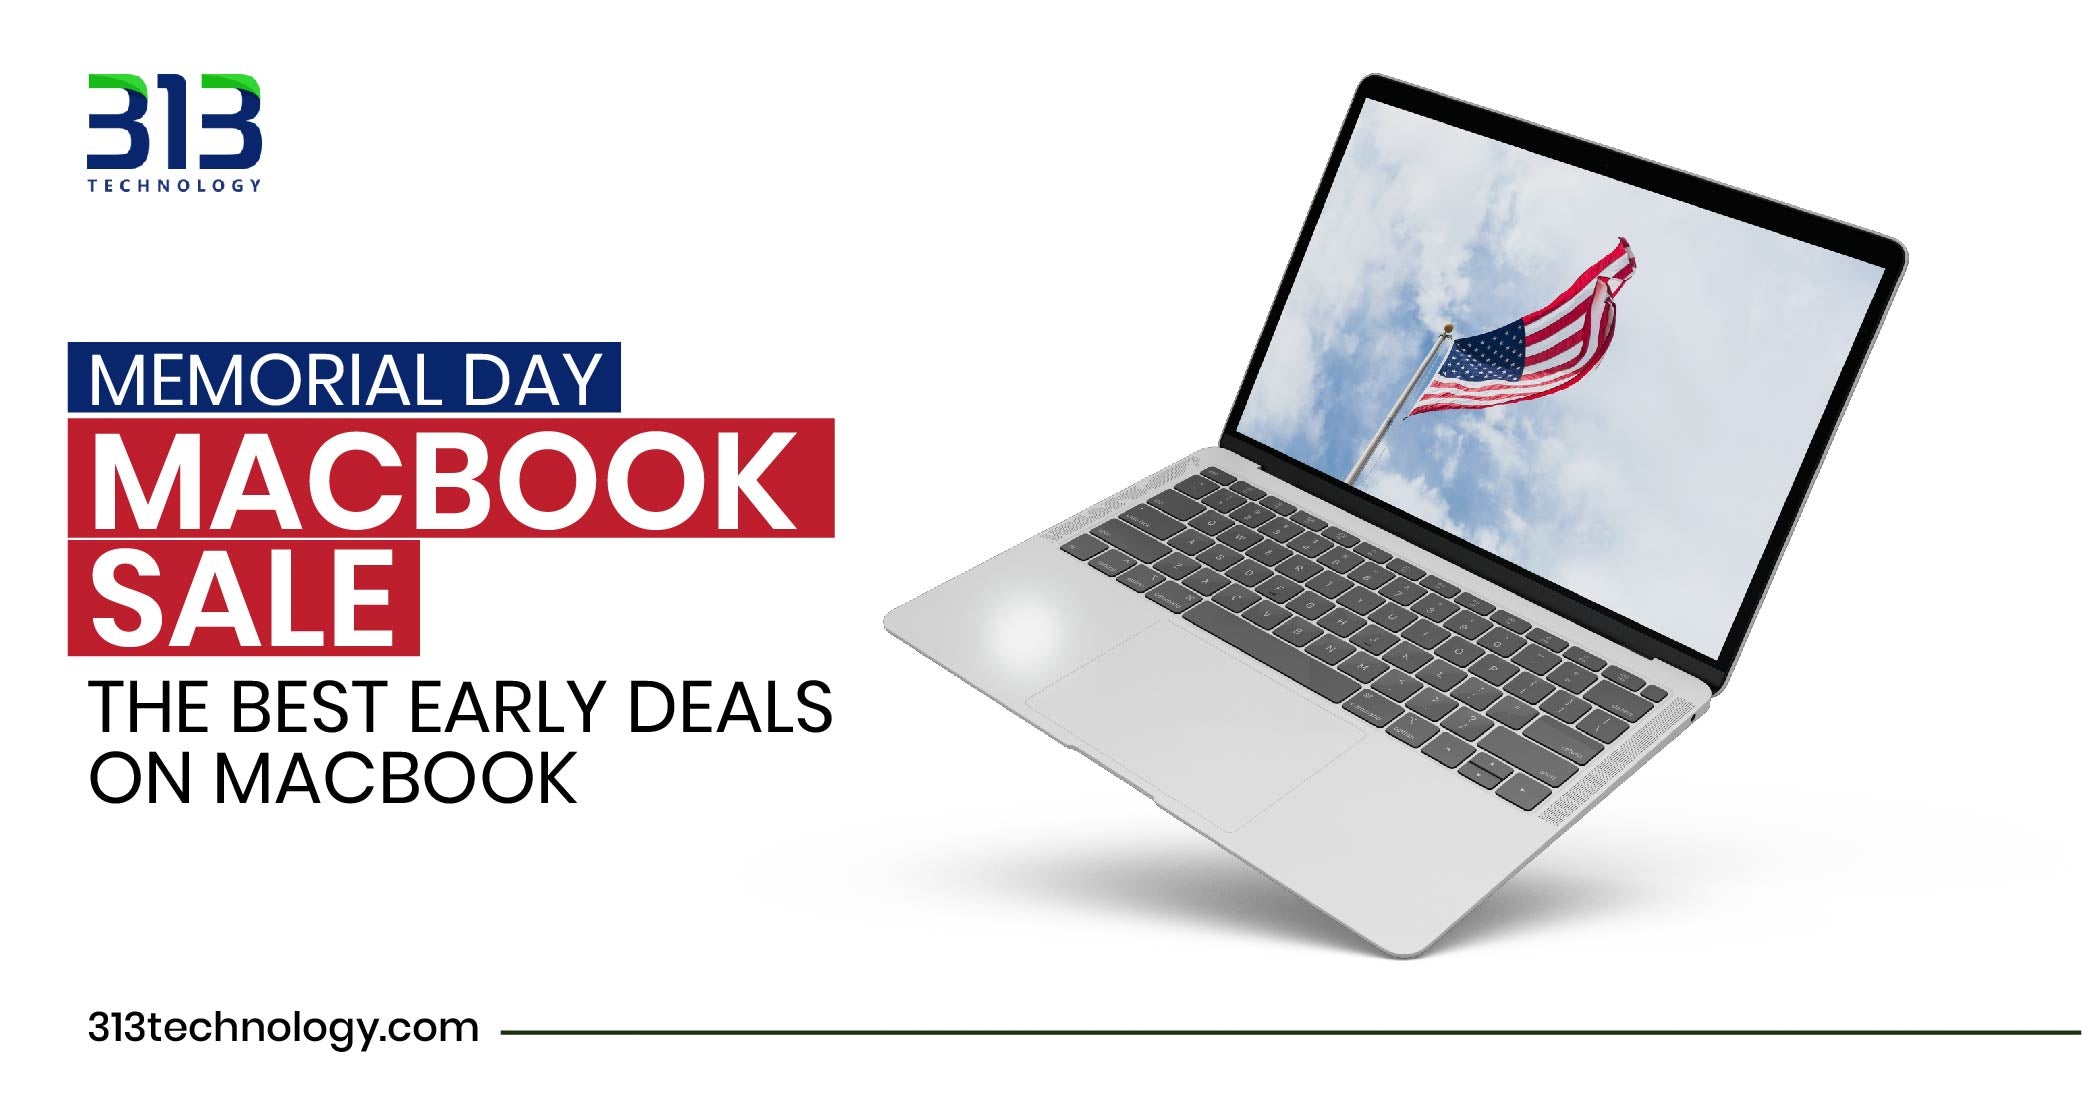 Memorial Day Macbook Sale The Best Early Deals on Macbook